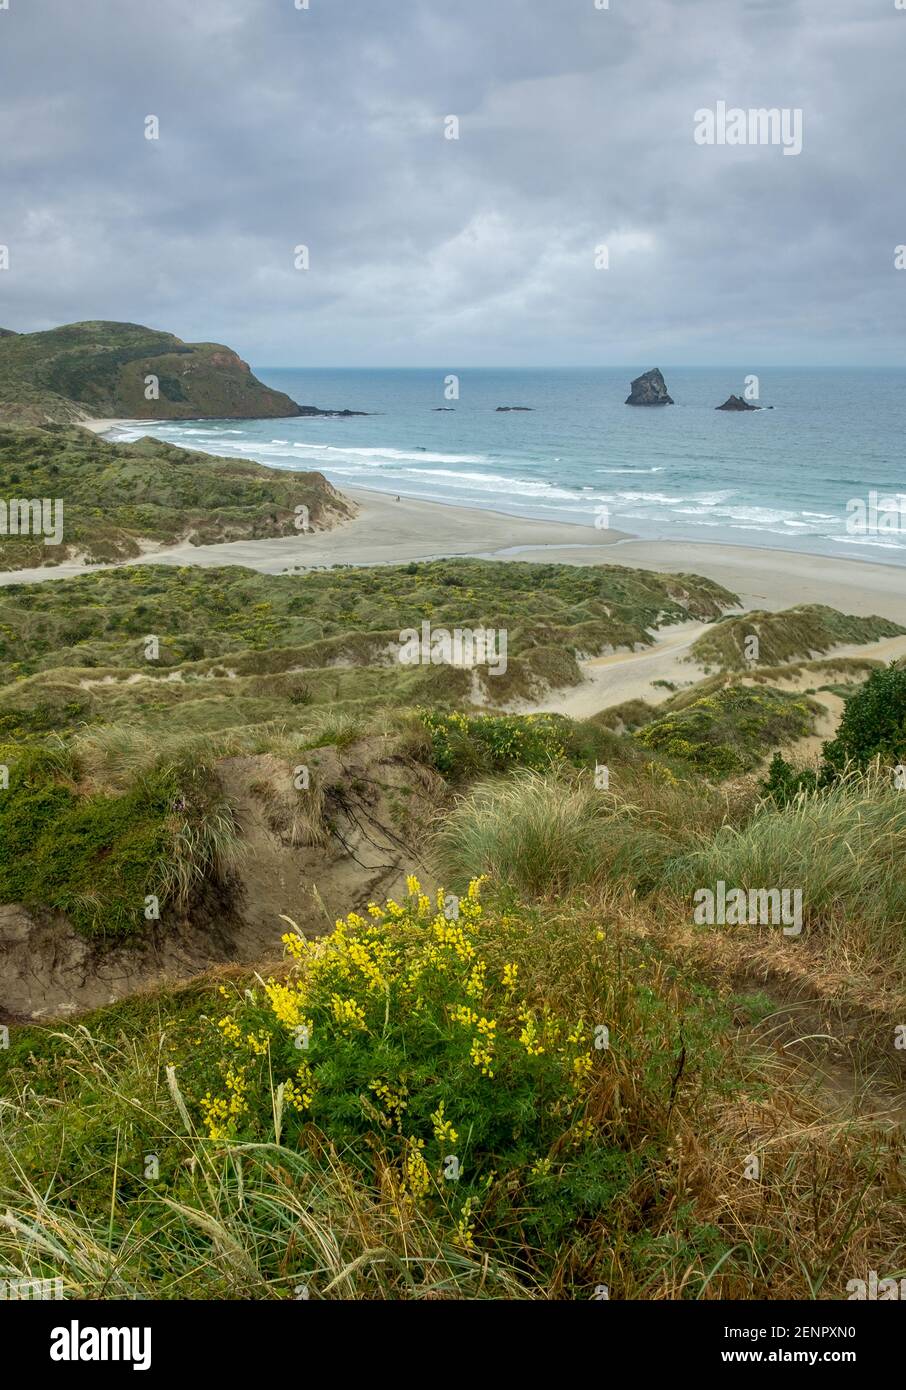 Nuova Zelanda la penisola di Otago. Sanfly beach e la costa del Pacifico. Foto Stock